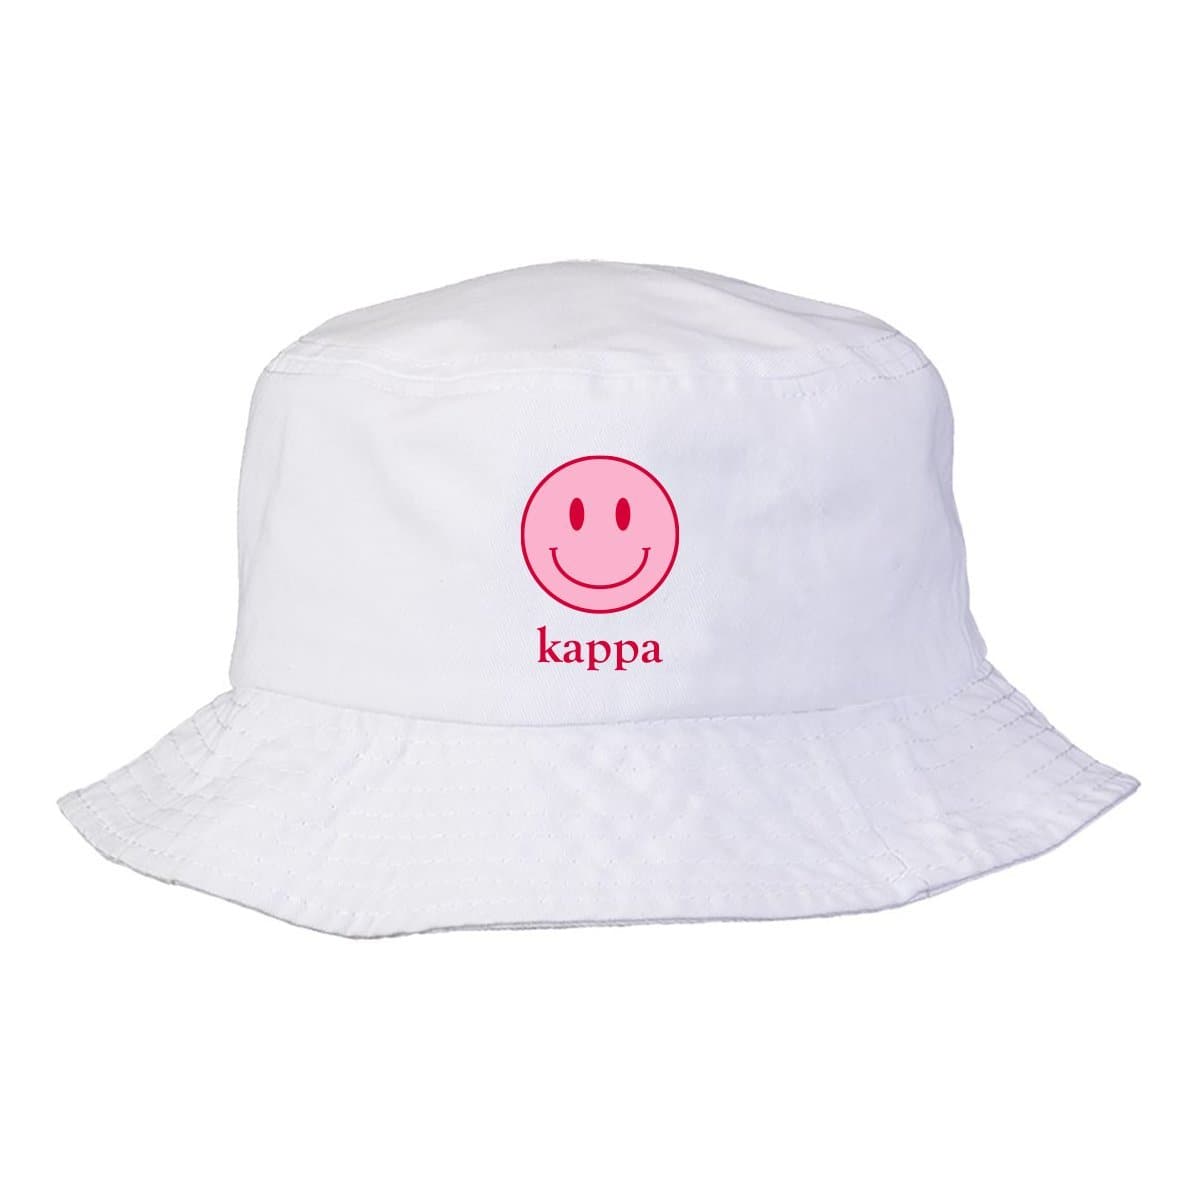 Kappa Smiley Bucket Hat | Kappa Kappa Gamma | Headwear > Bucket hats